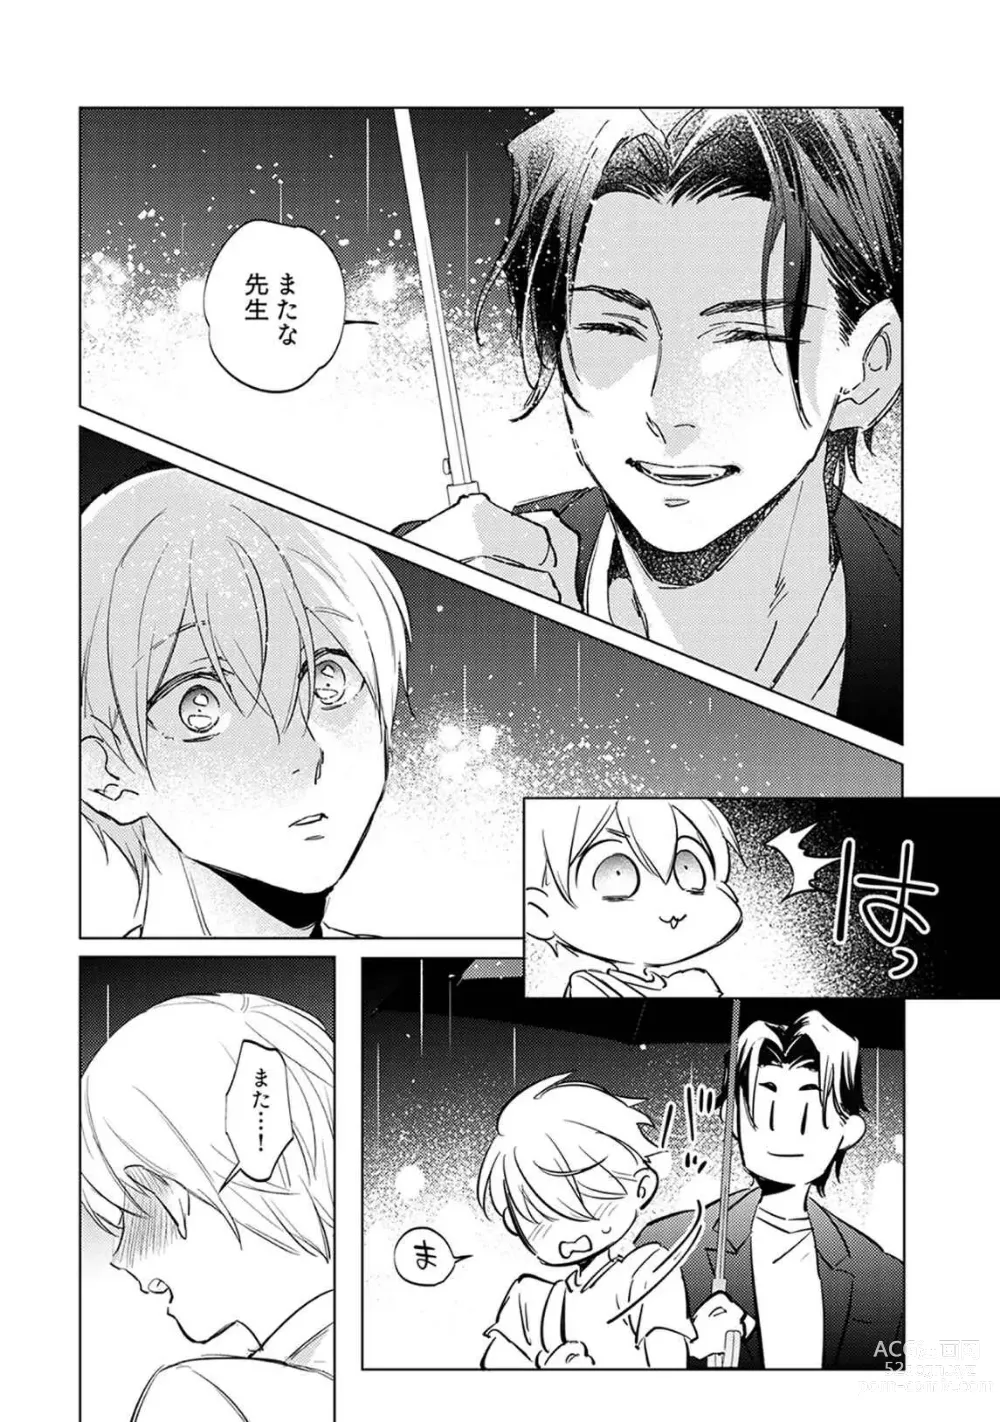 Page 173 of manga First Call 1 ~Doutei Gekai Toshishita Yazuka no Yome ni Sare Sou desu!~